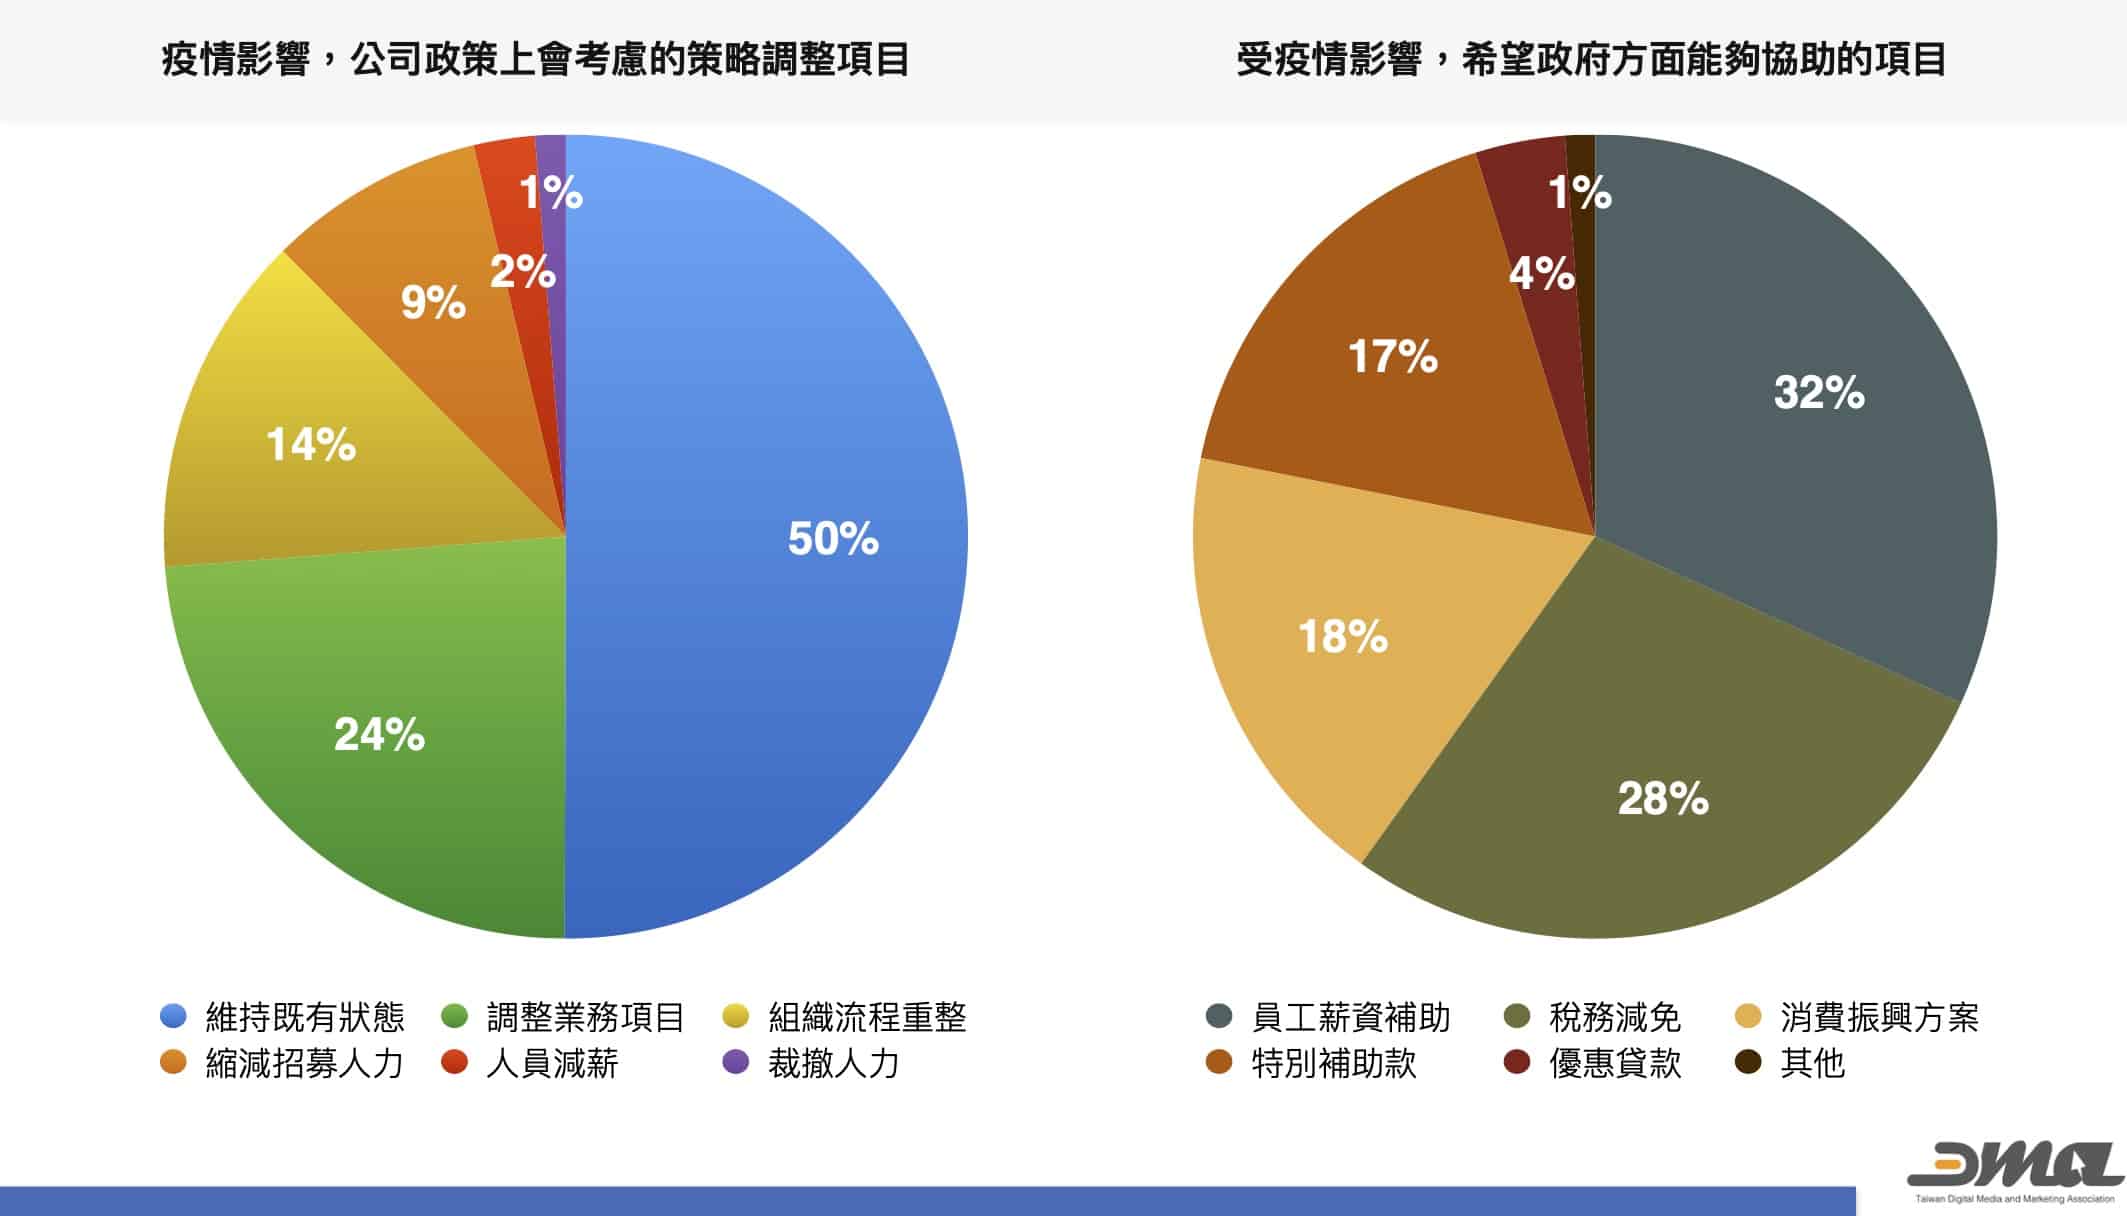 DMA市場趨勢分析「2021疫情下的台灣數位行銷市場調查」